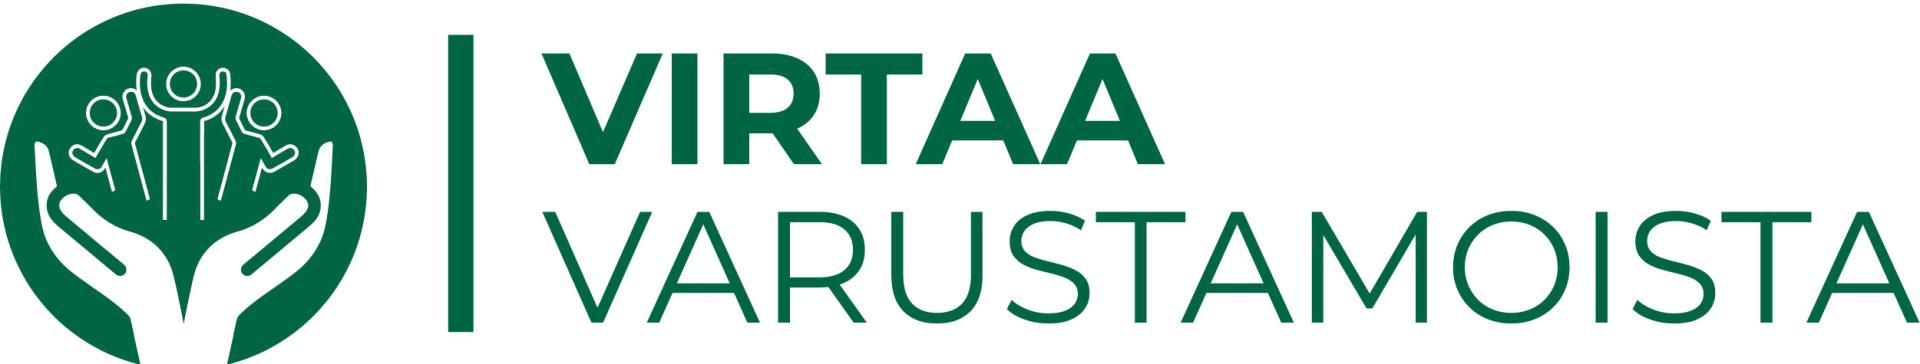 Virtaa varustamoista -logo, teksti tummanvihreä valkoisella pohjalla